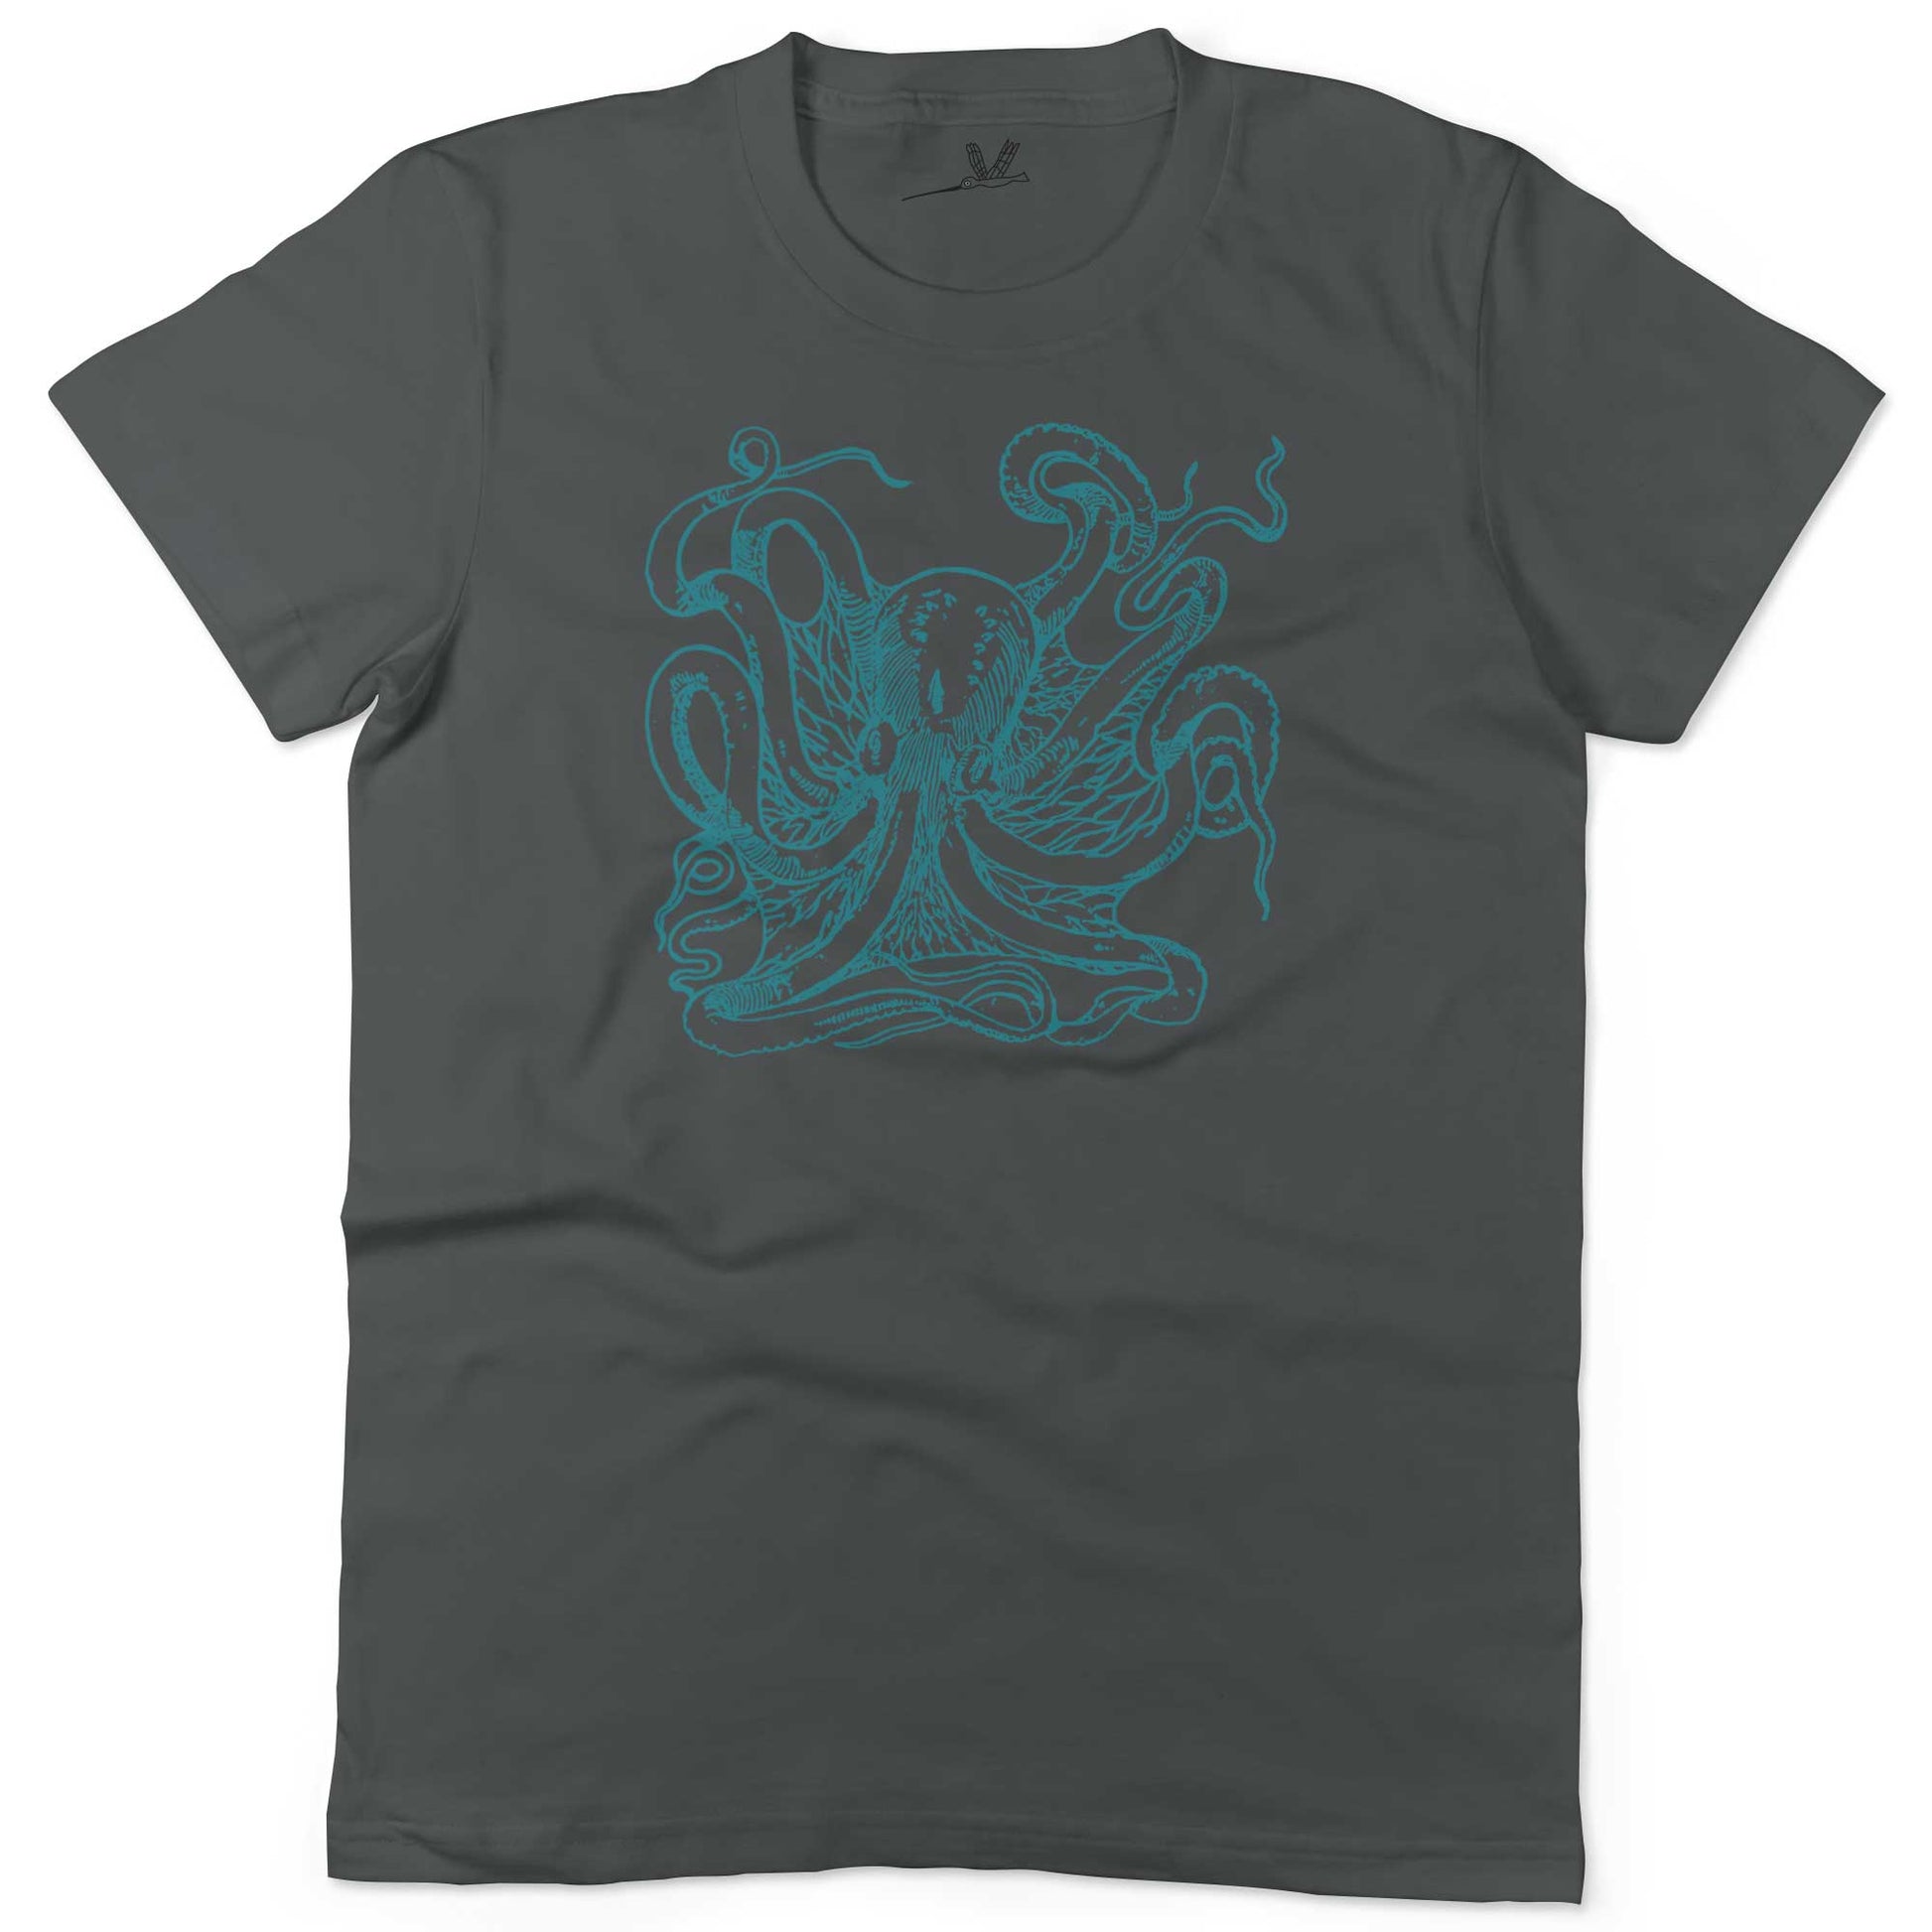 Giant Octopus Unisex Or Women's Cotton T-shirt-Asphalt-Woman